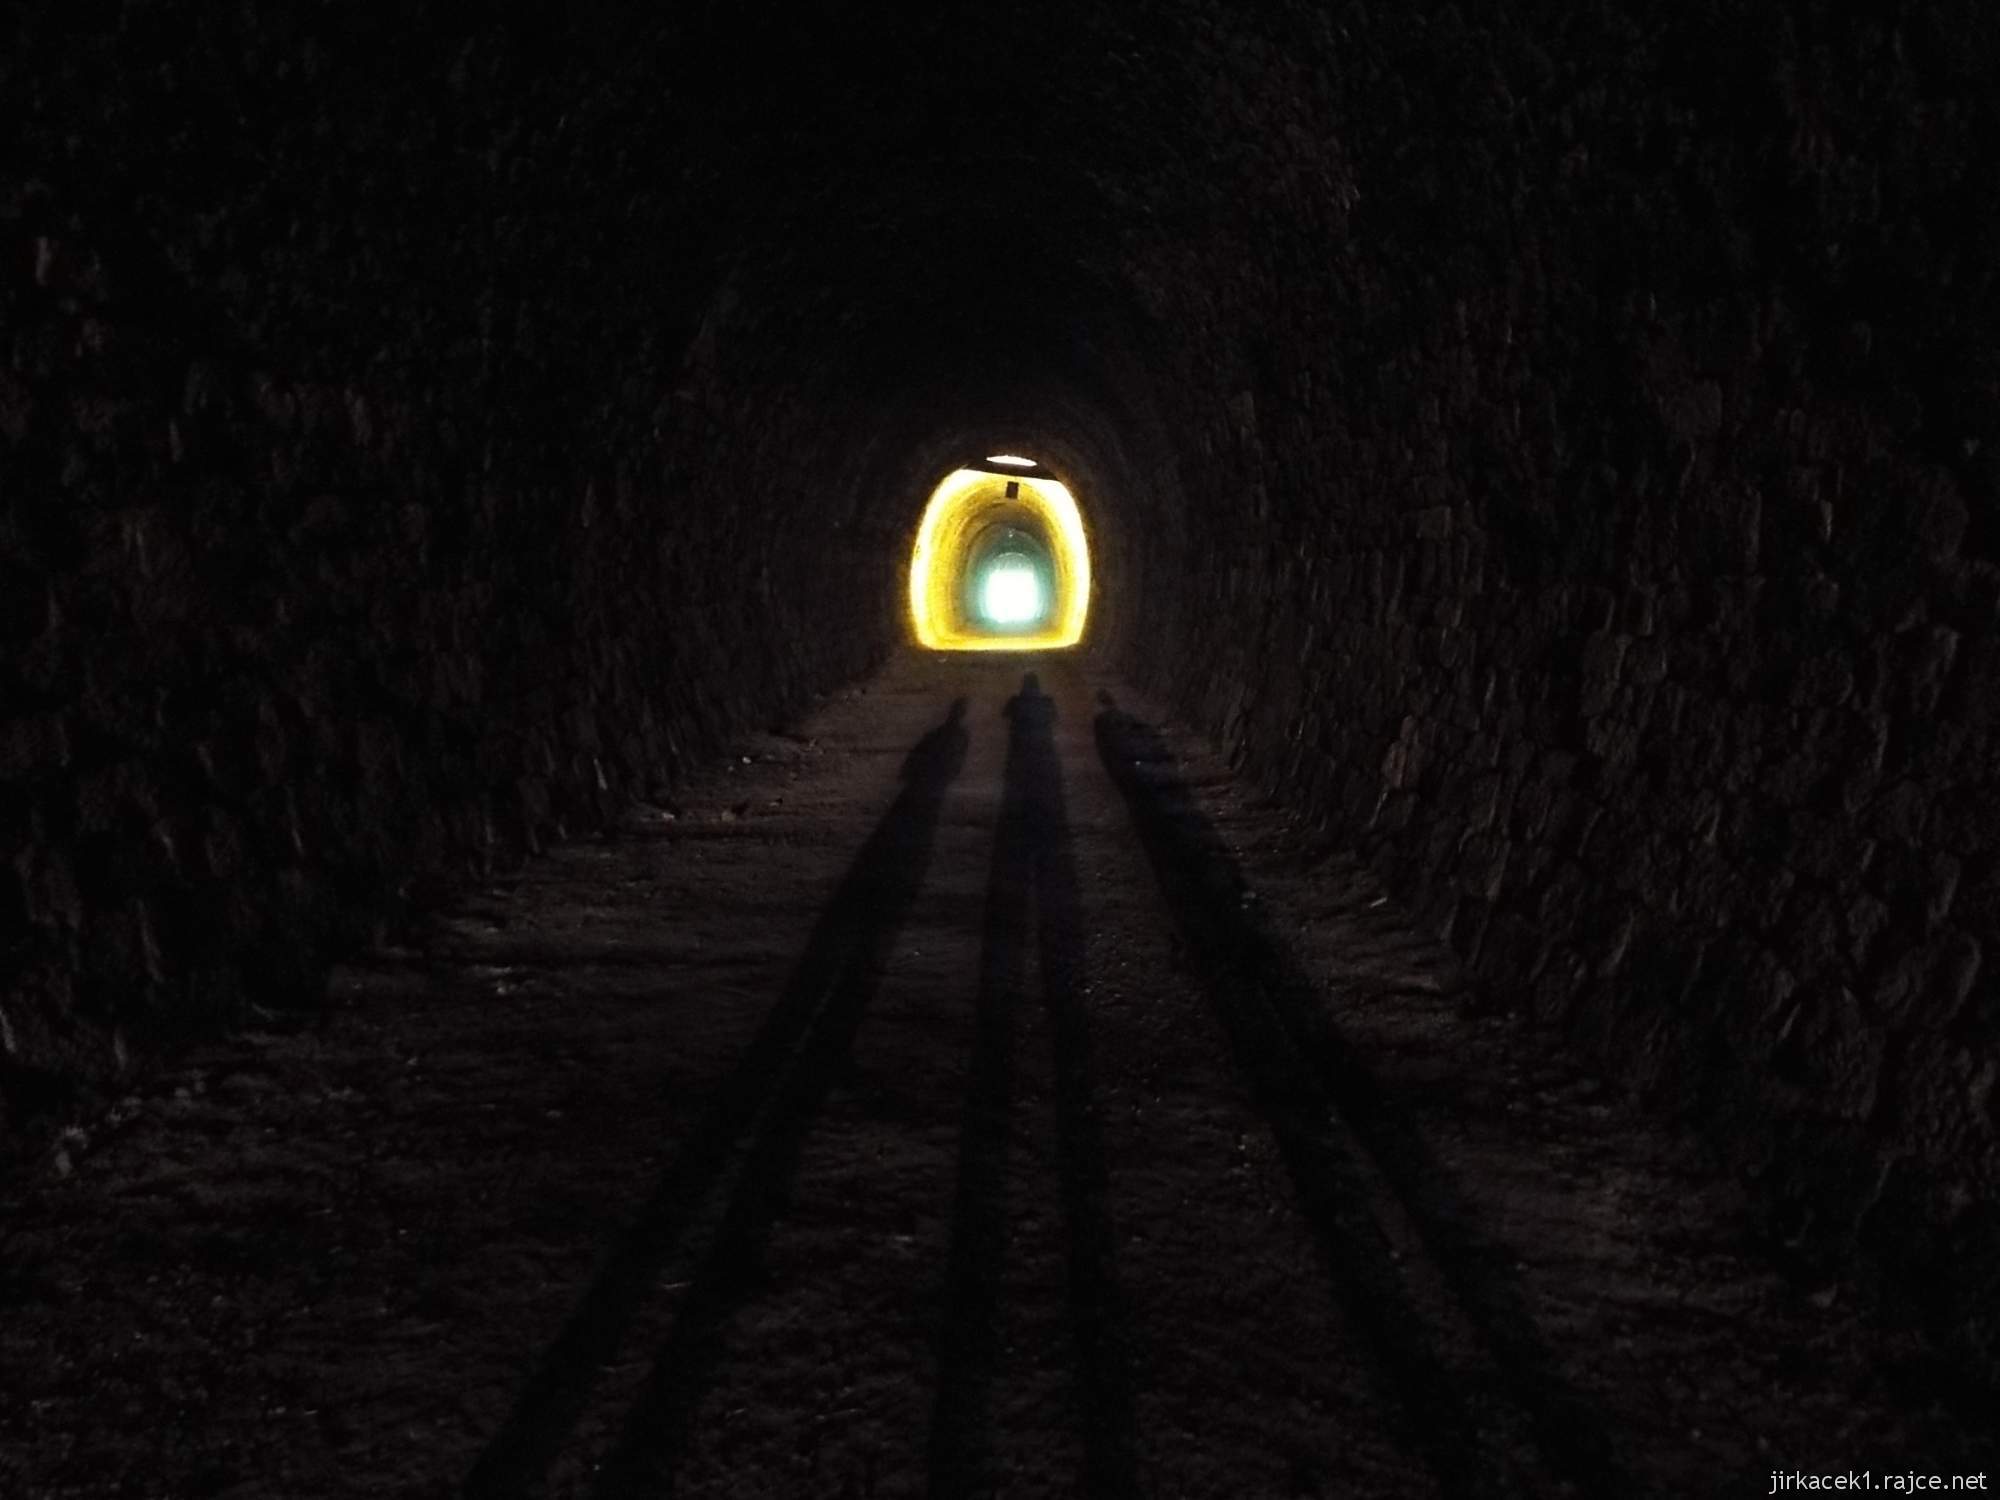 Slavíč - Ferdinandův železniční tunel - mimozemšťani v tunelu